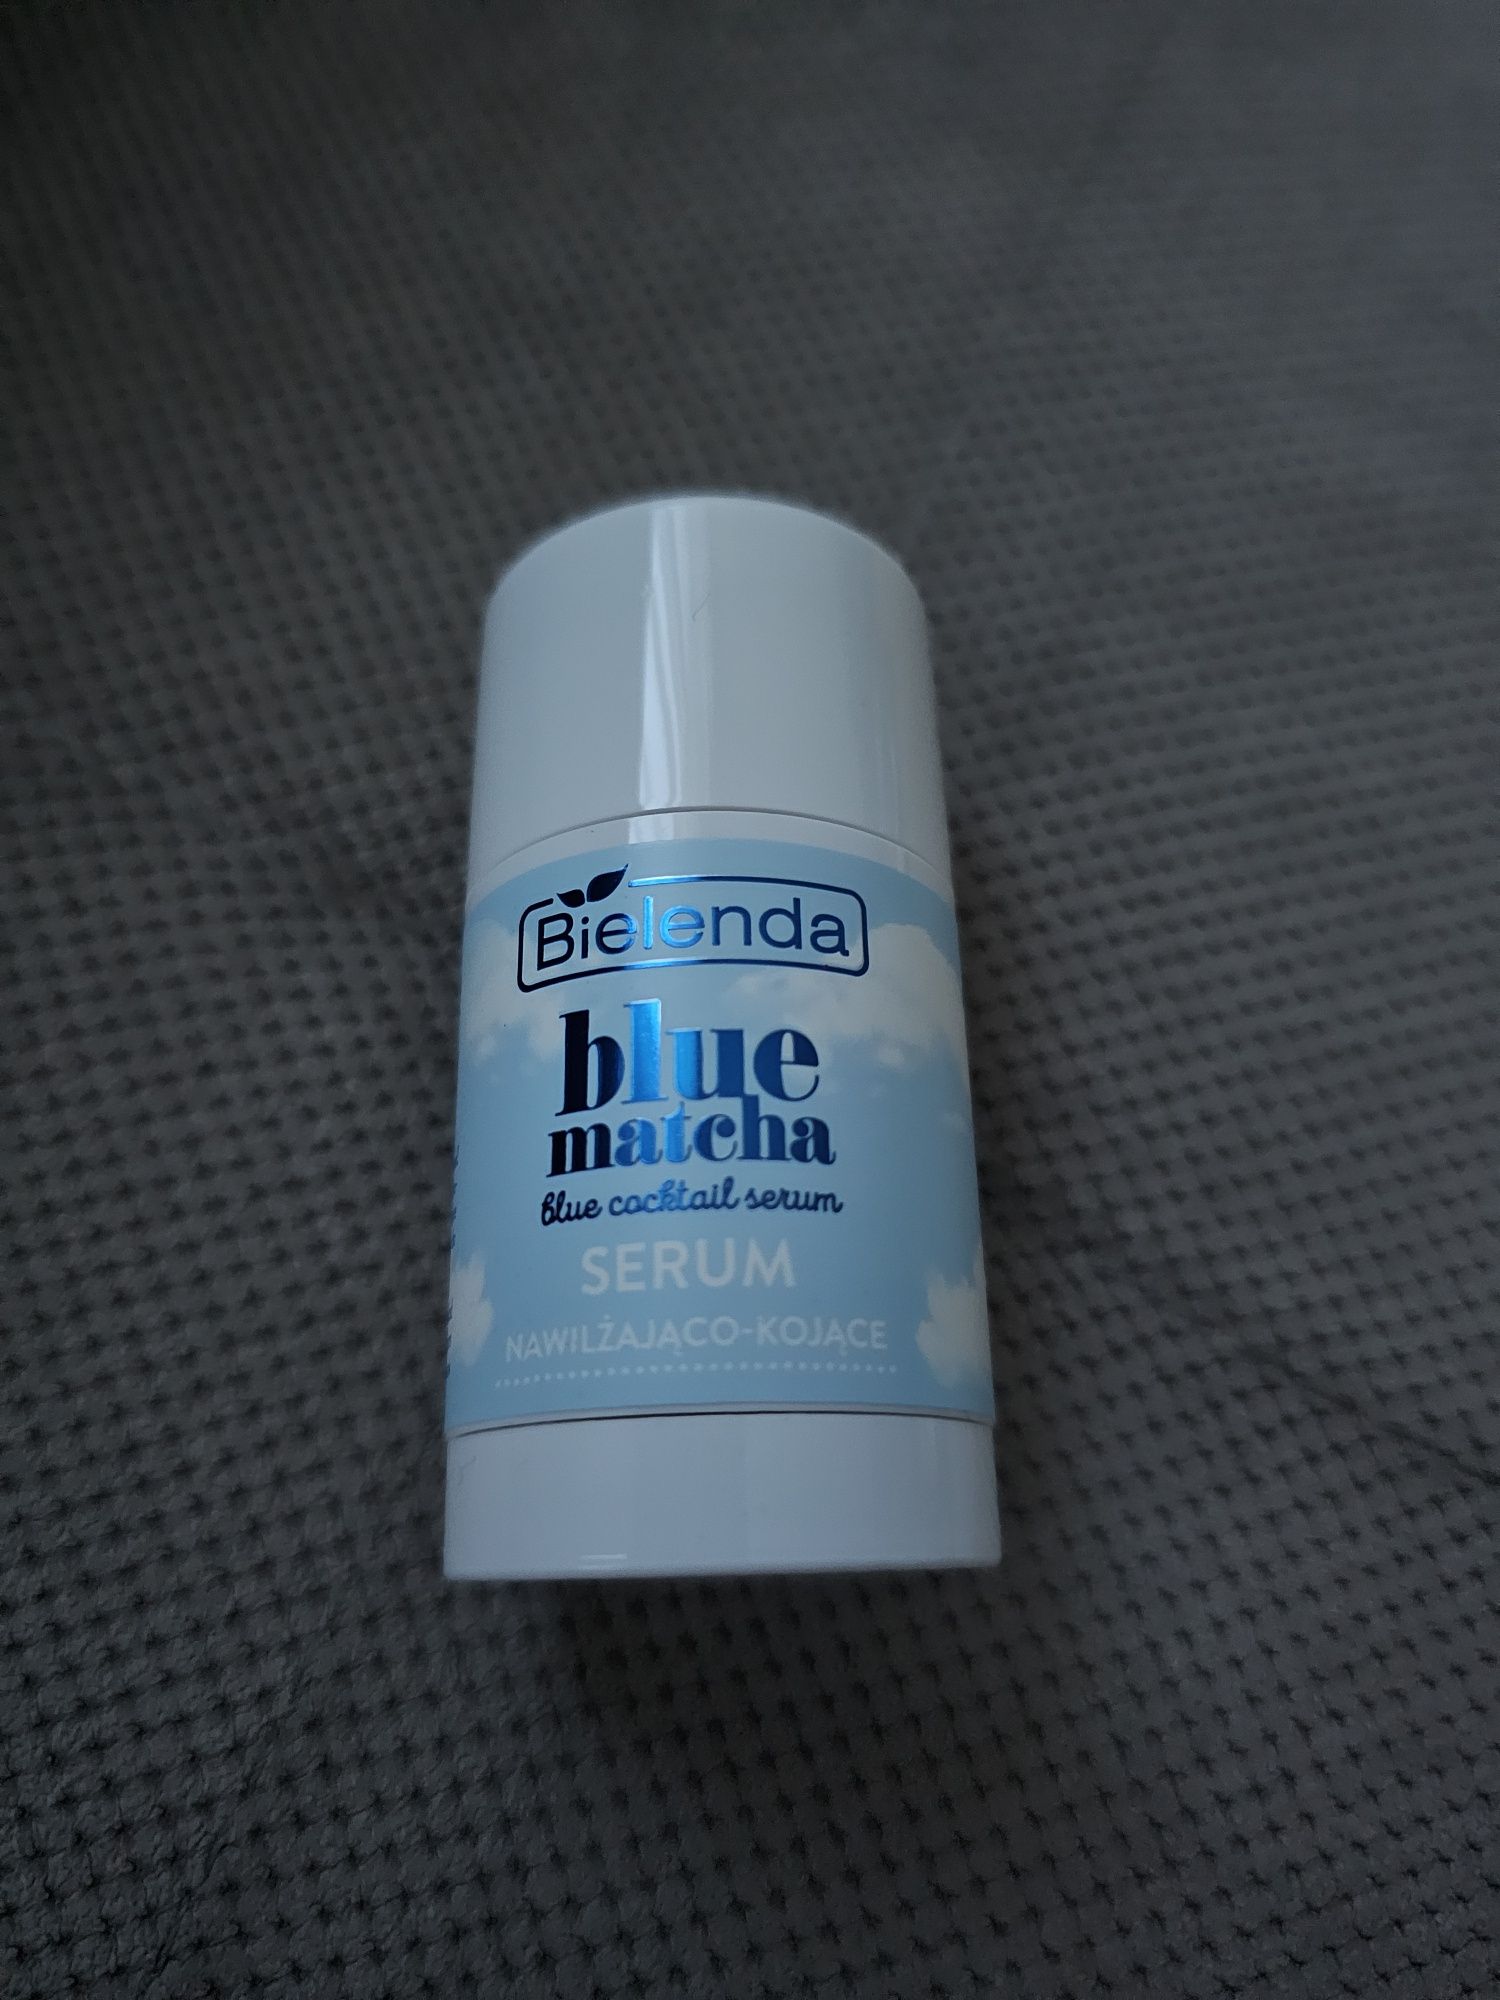 BIELENDA Blue Matcha serum do twarzy, nawilżająco-kojące 30g / NOWE